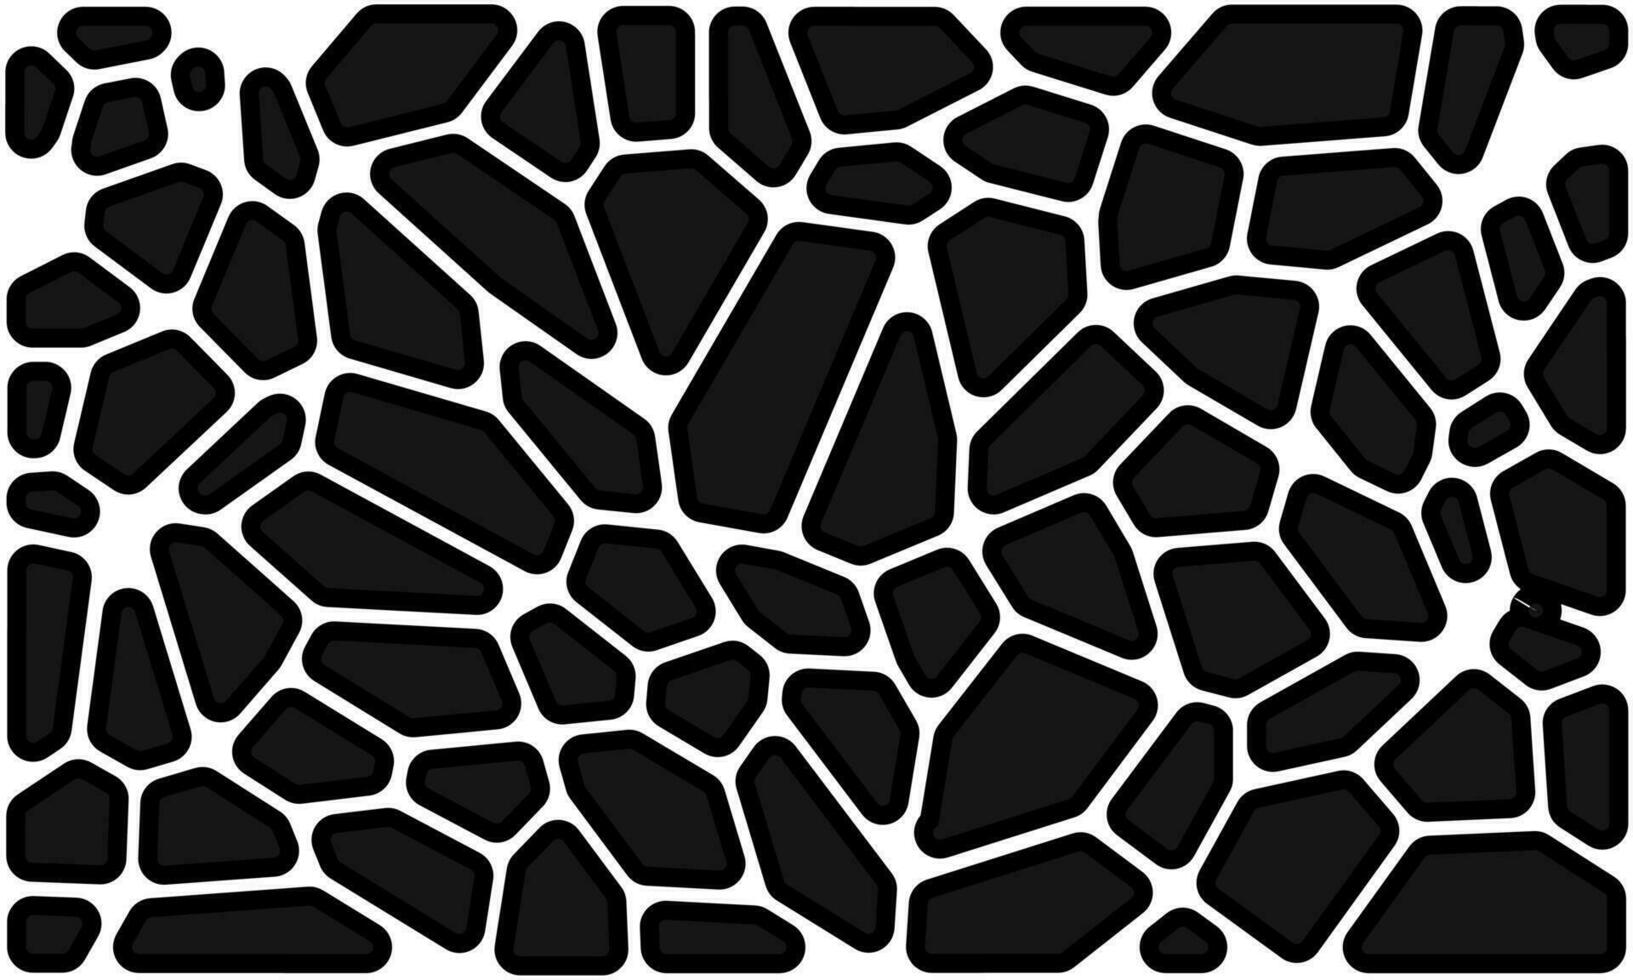 voronoi geometrisk mönster.illustration sten effekt arrangemang mönster.element för dekoration av din design bakgrund. vektor